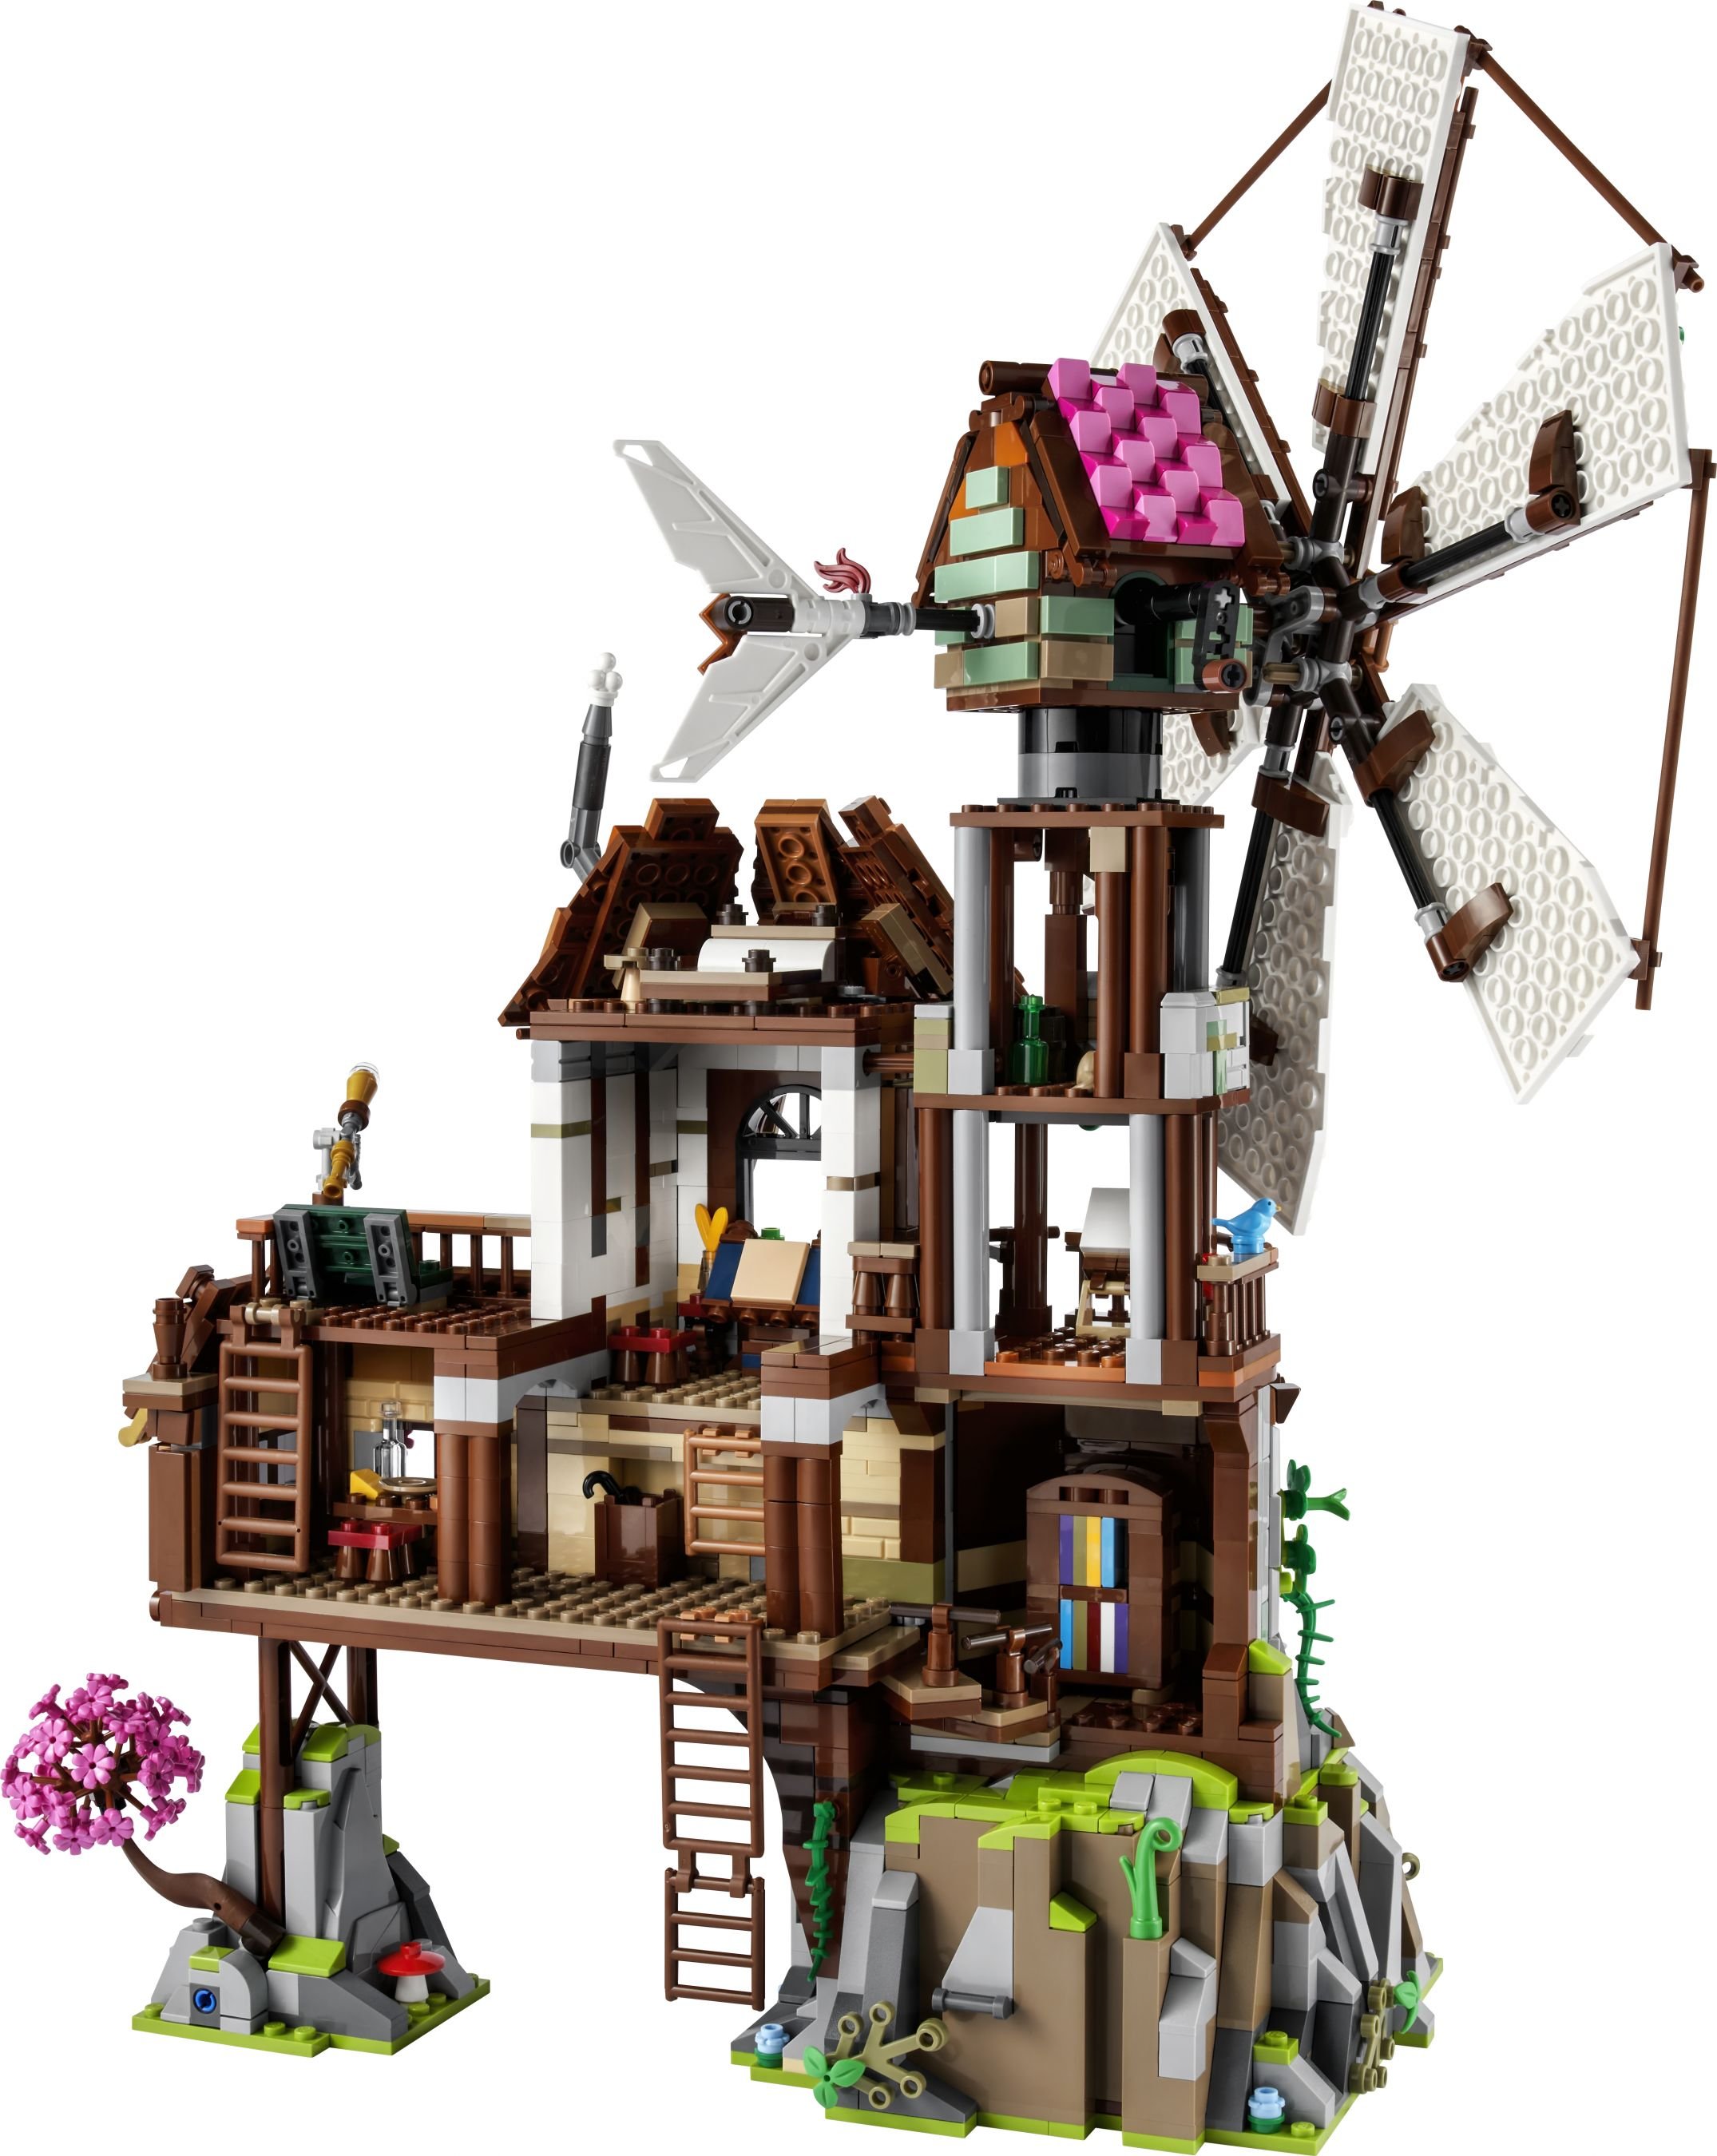 LEGO Bricklink 910003 The Mountain Windmill LEGO_910003_back_01.jpg